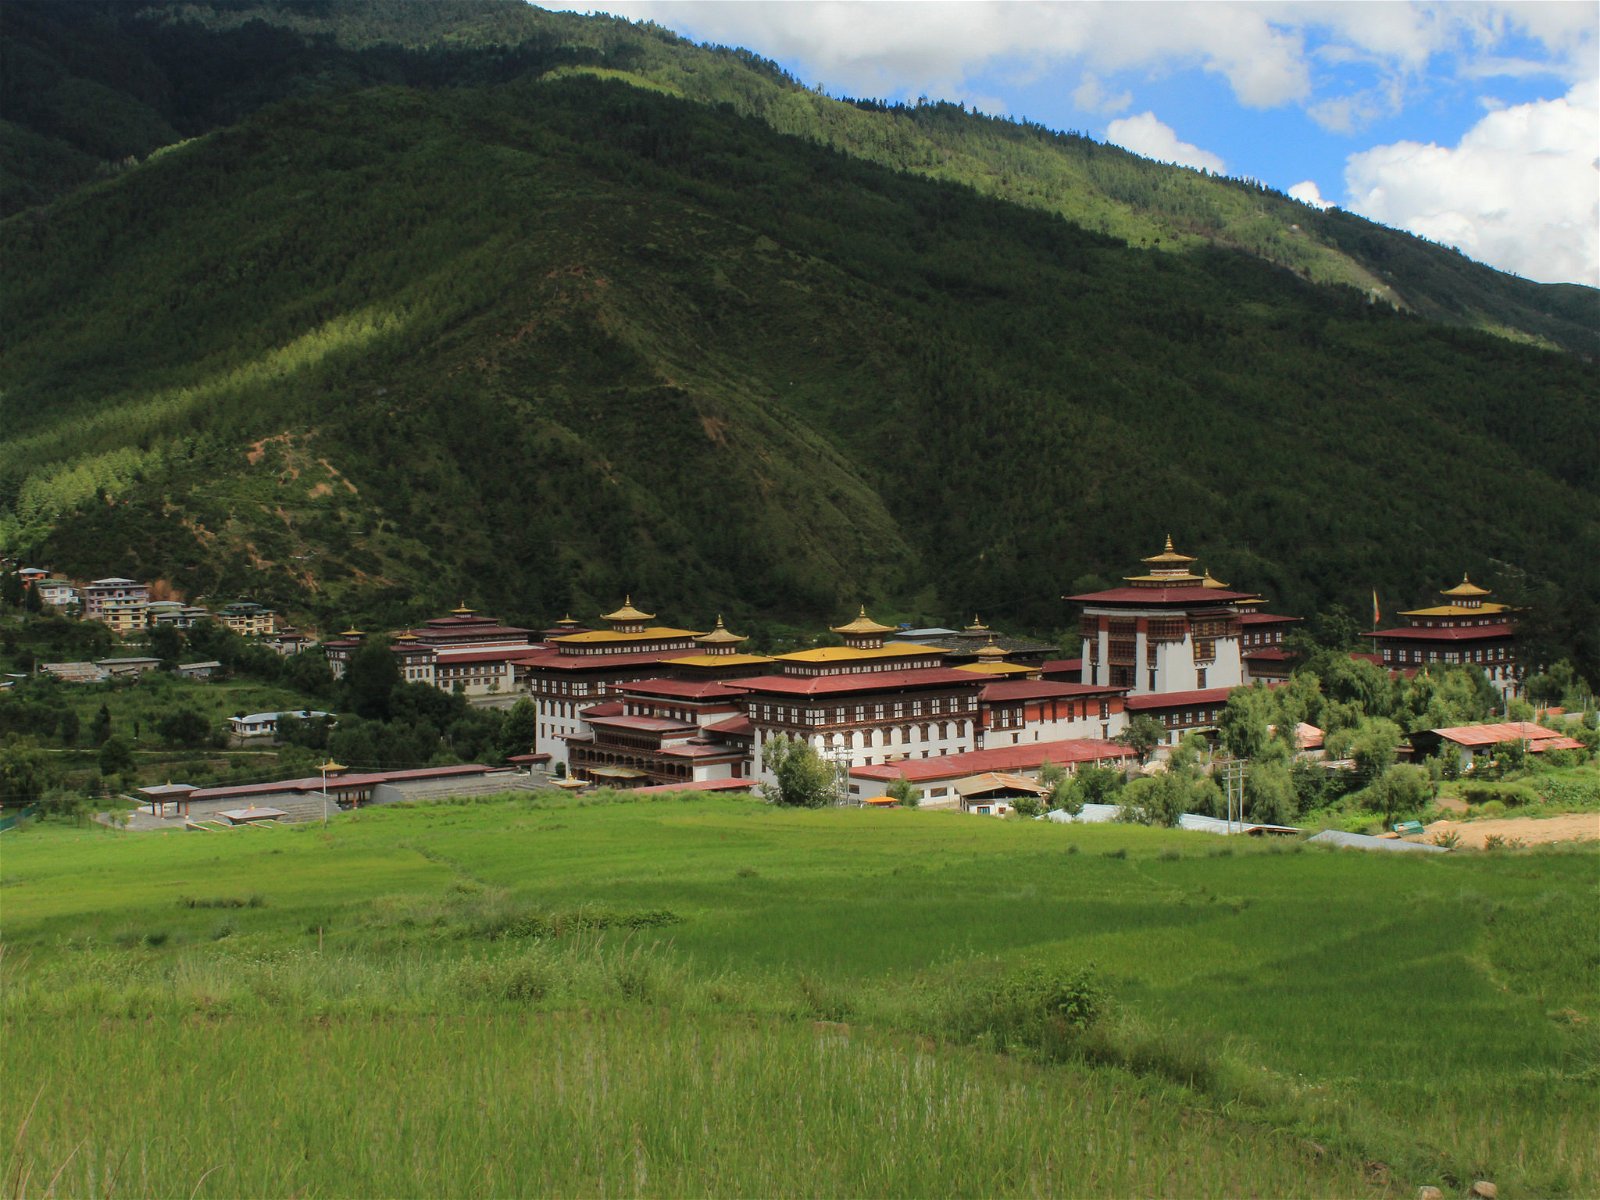 Bhutan Travel 4 days : Paro Thimphu Tour